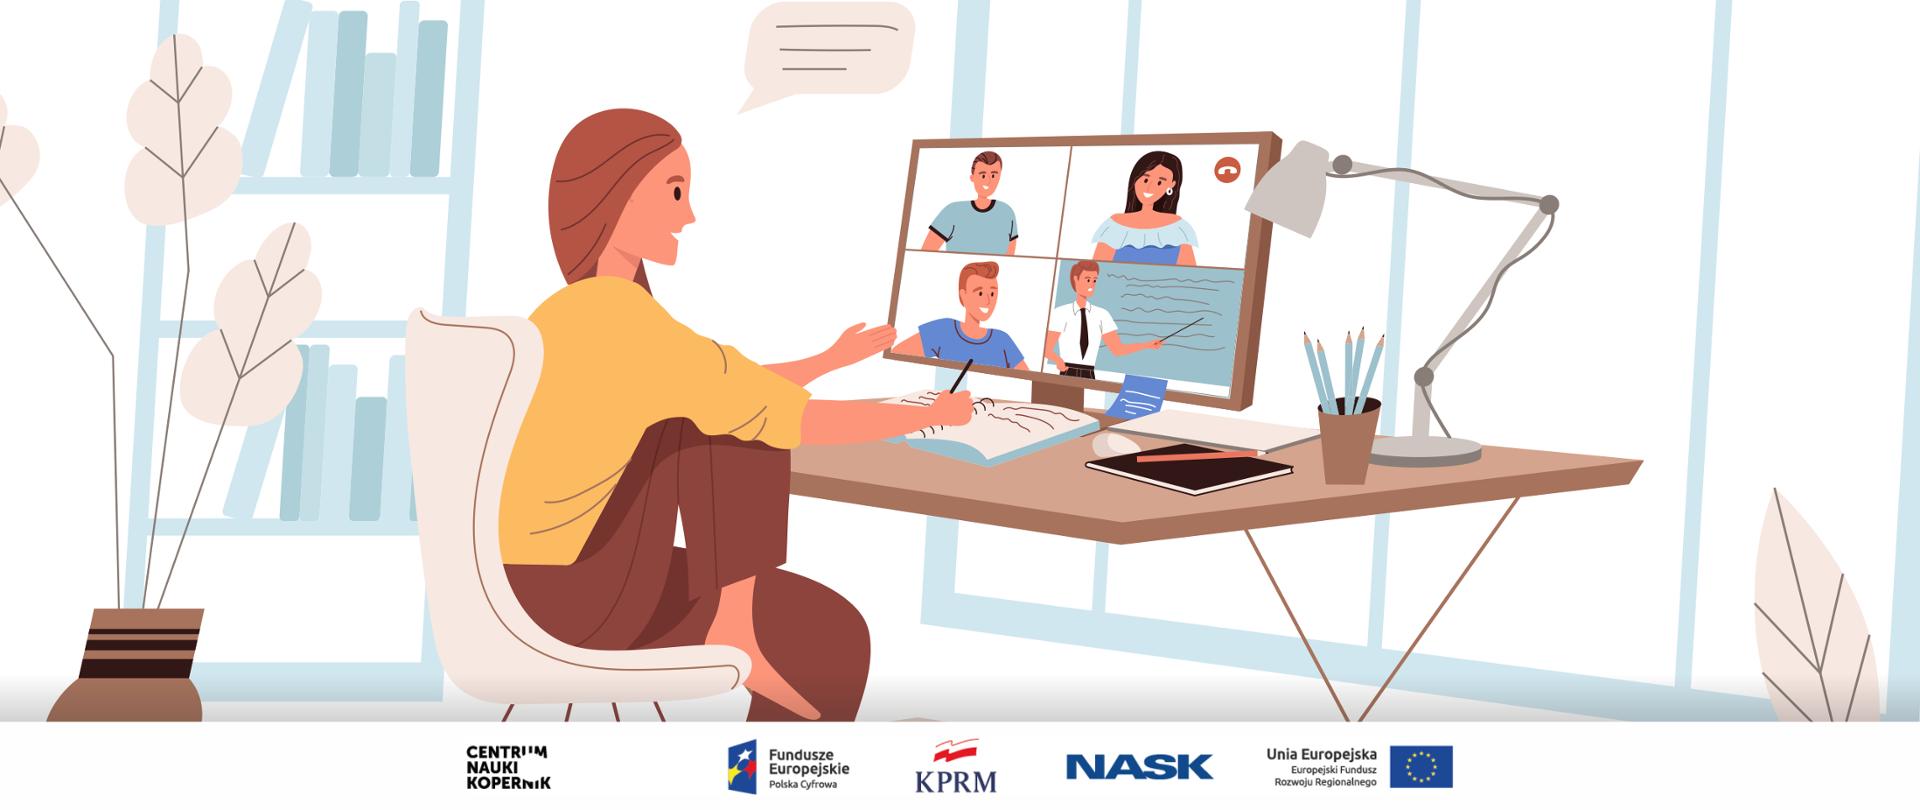 Grafika wektorowa - kobieta siedząca za biurkiem (jedną nogę trzyma na krześle), bierze udział w spotkaniu edukacyjnym online.